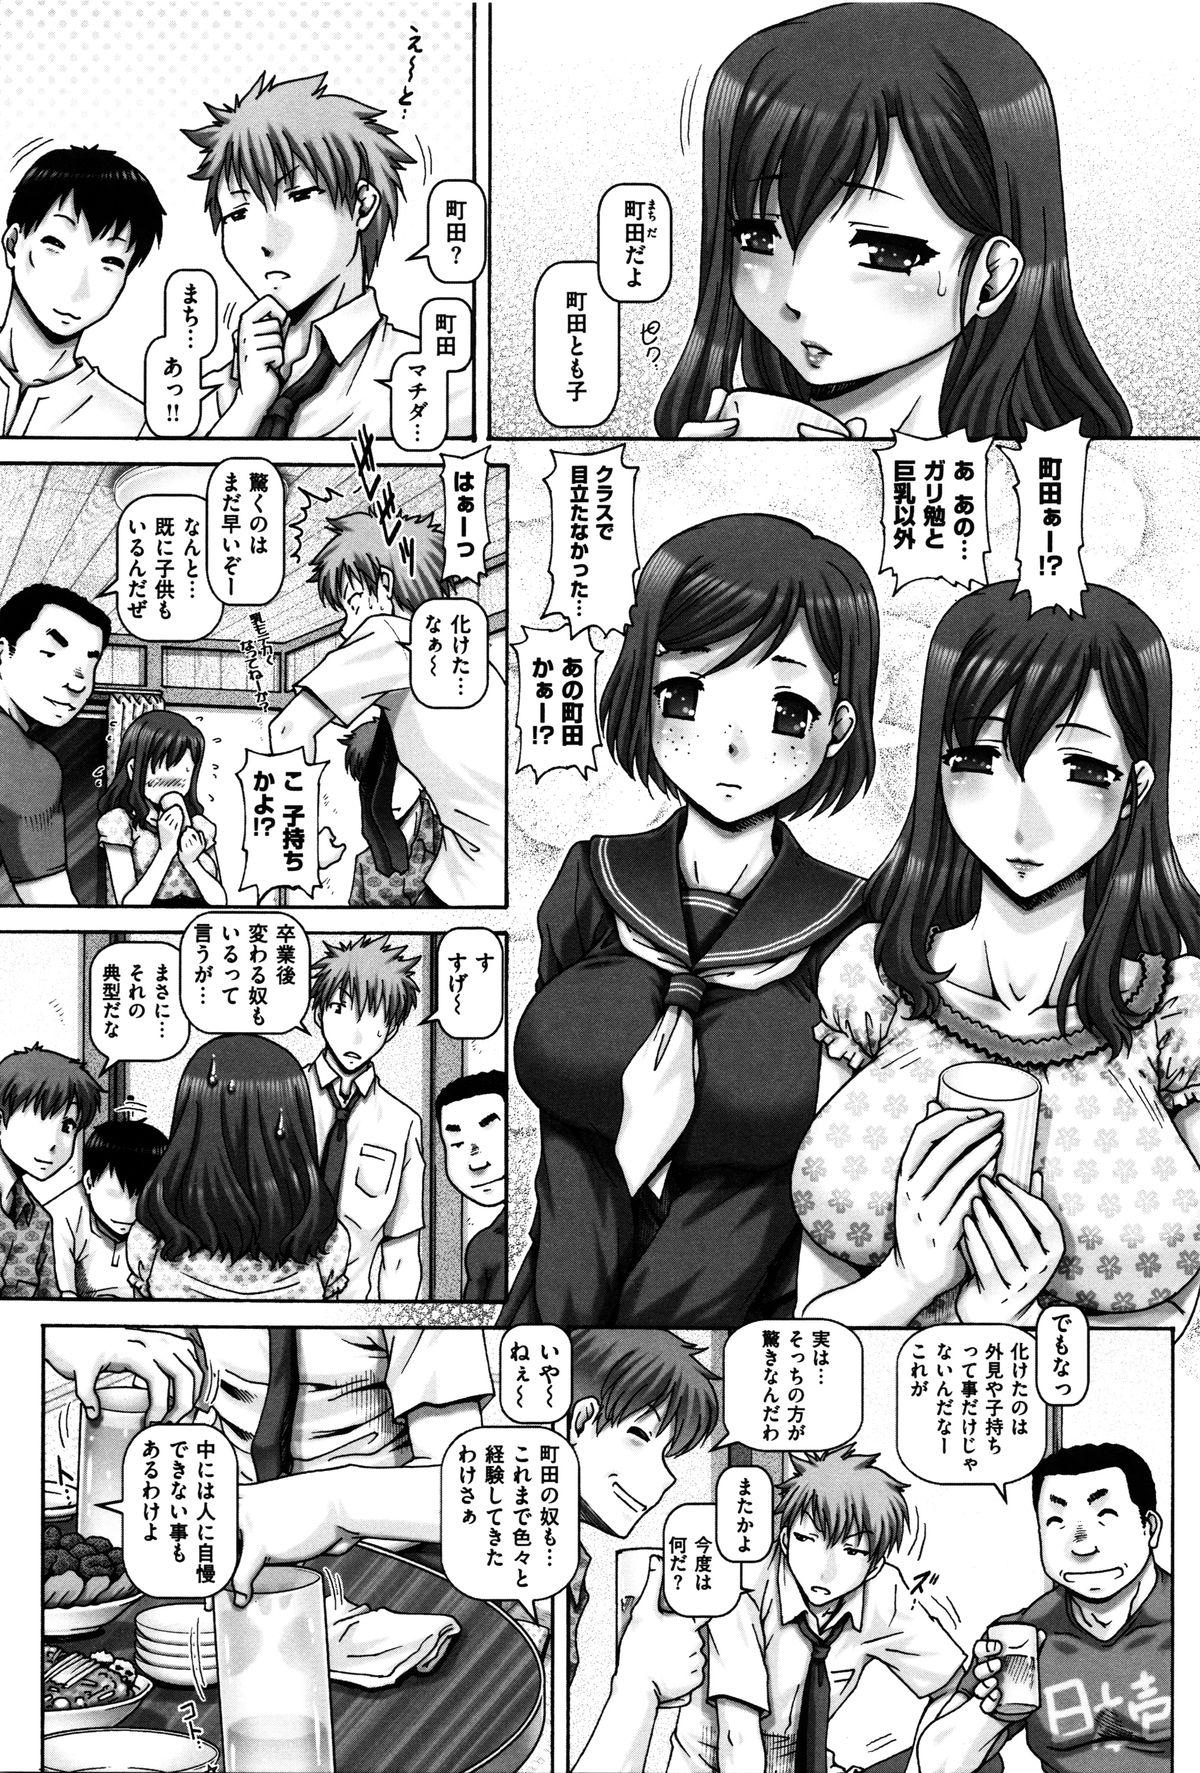 Classic Kachiku Ane - chapter 1,5,7 & 9 Naughty - Page 4